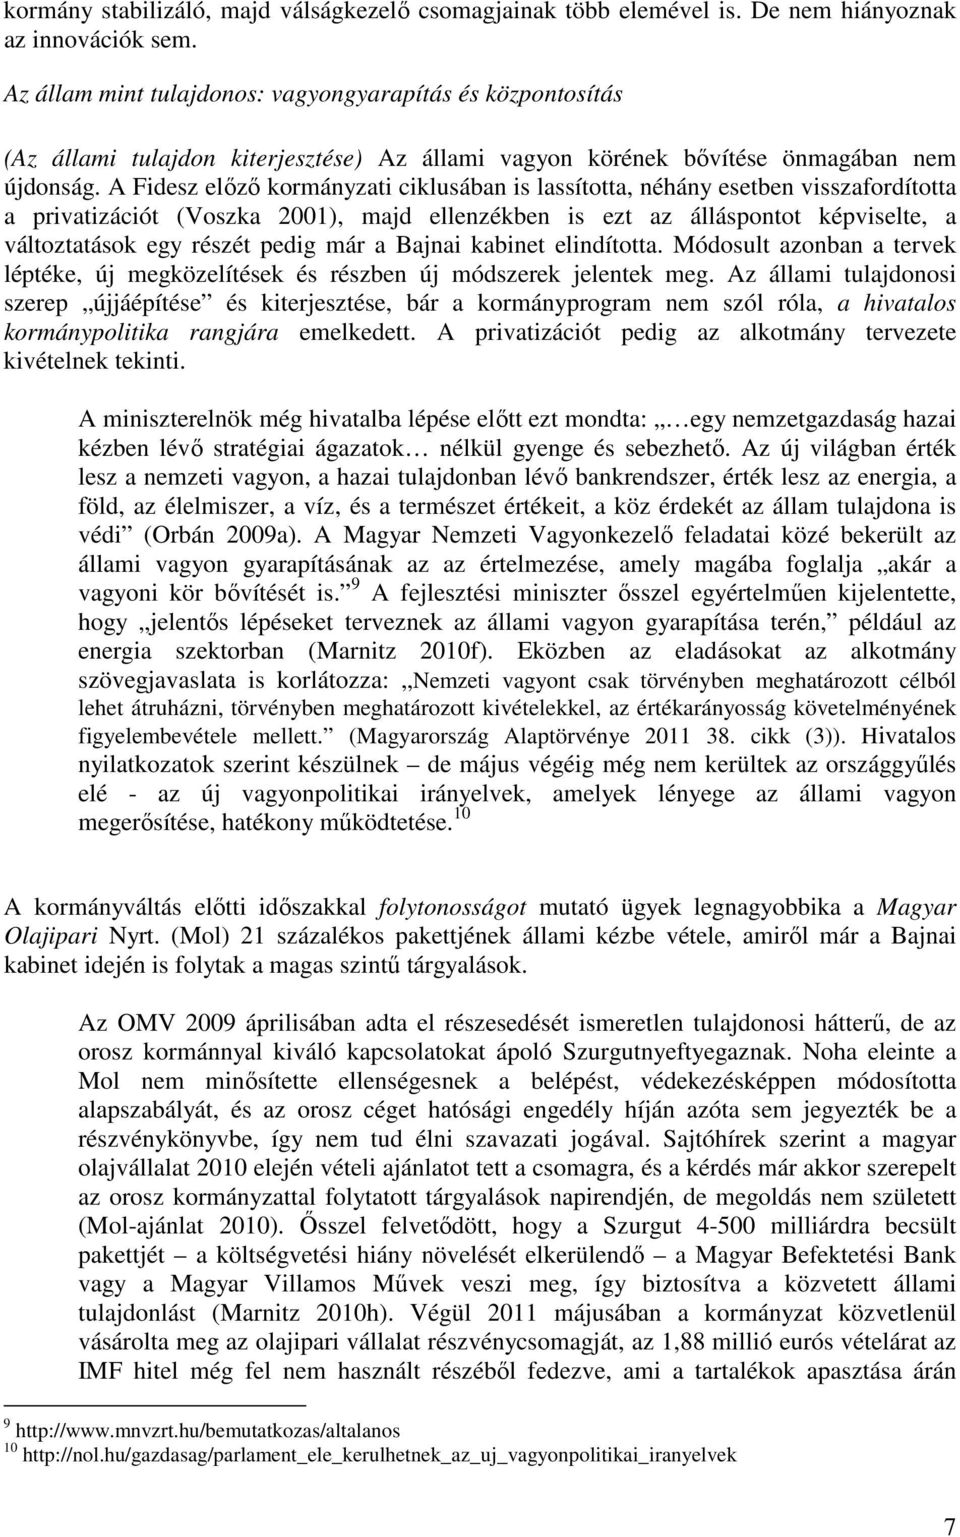 A Fidesz előző kormányzati ciklusában is lassította, néhány esetben visszafordította a privatizációt (Voszka 2001), majd ellenzékben is ezt az álláspontot képviselte, a változtatások egy részét pedig